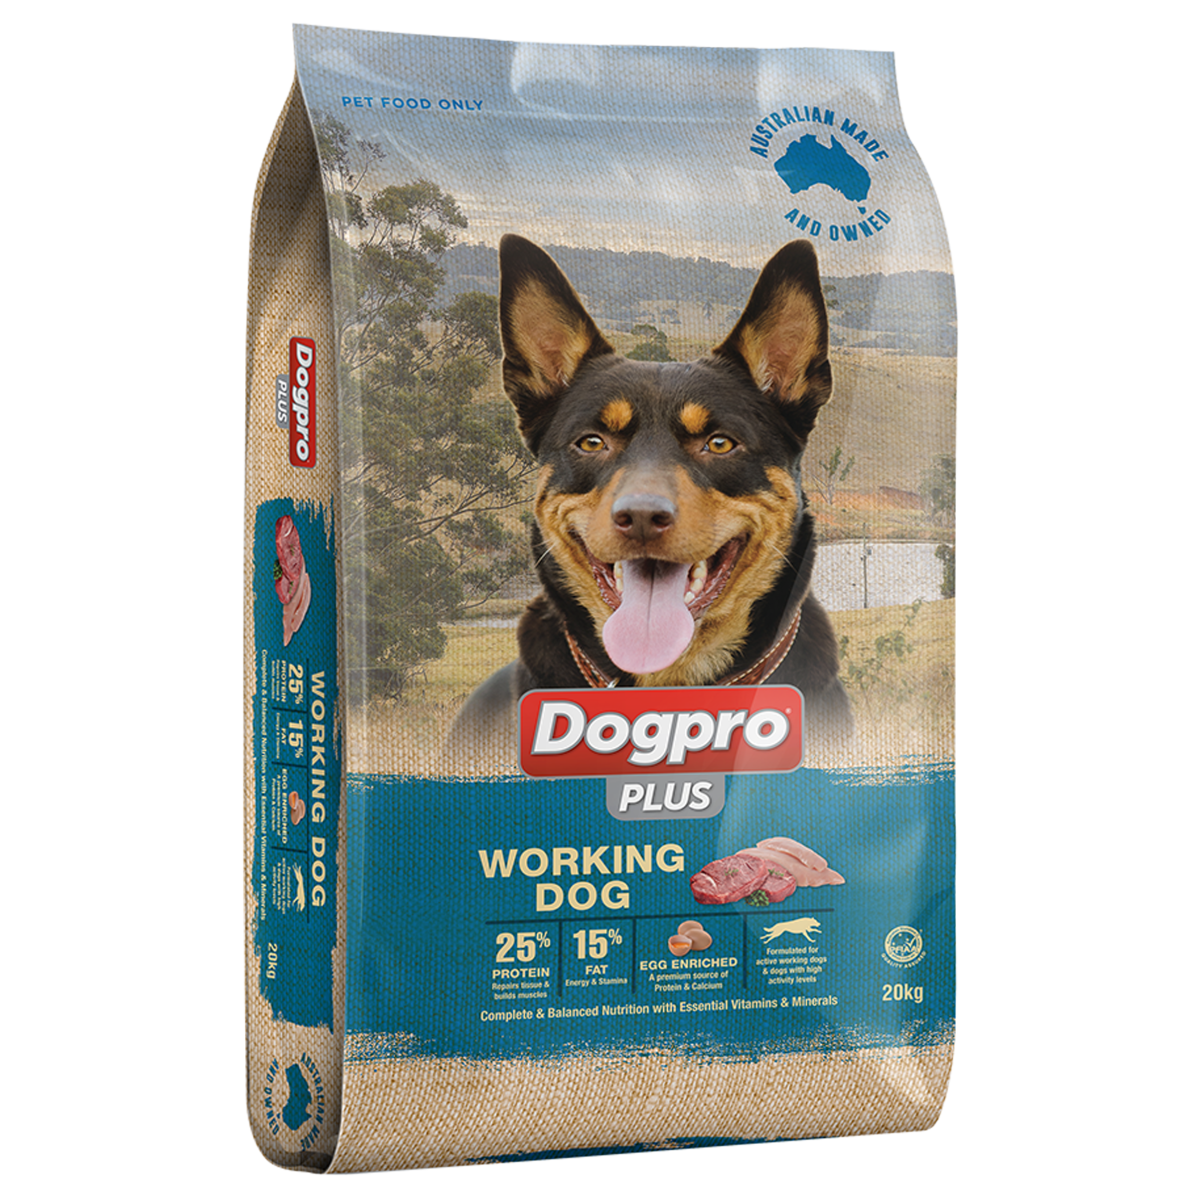 Dogpro Plus Working Dog